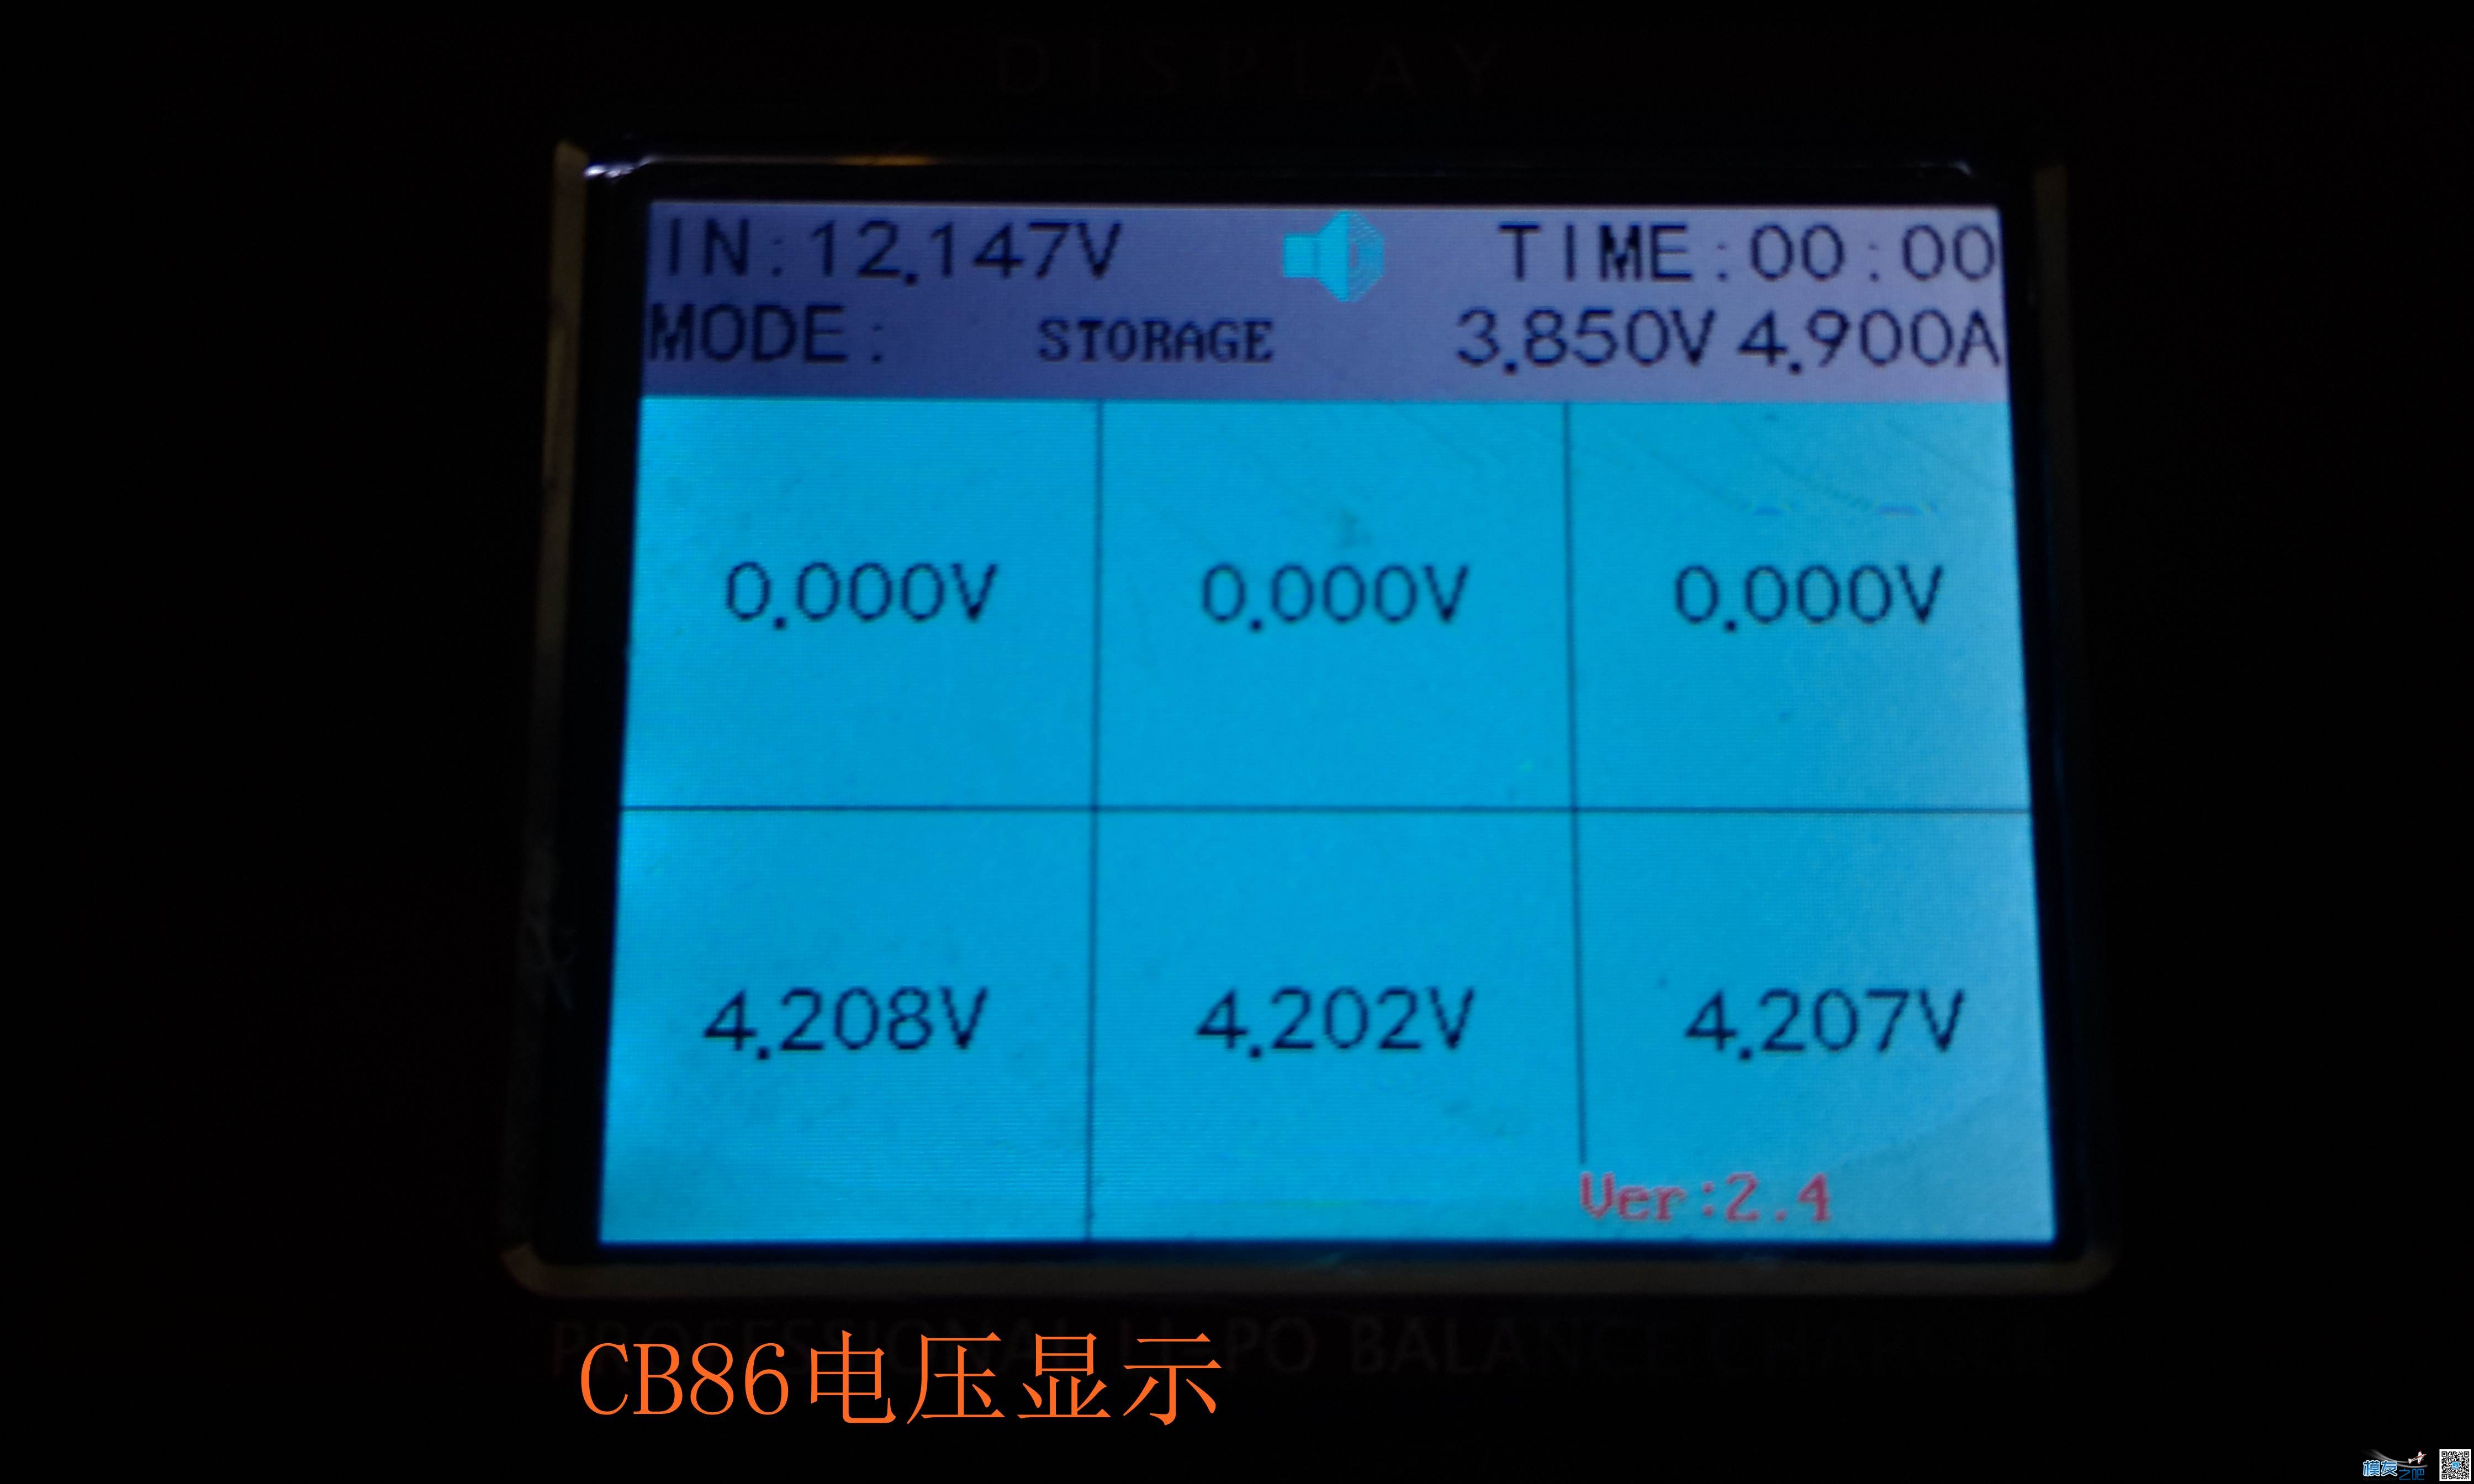 乐迪CP620开箱与CB86PLUS对比测试 电池,充电器,乐迪,固件,html 作者:455090630 511 